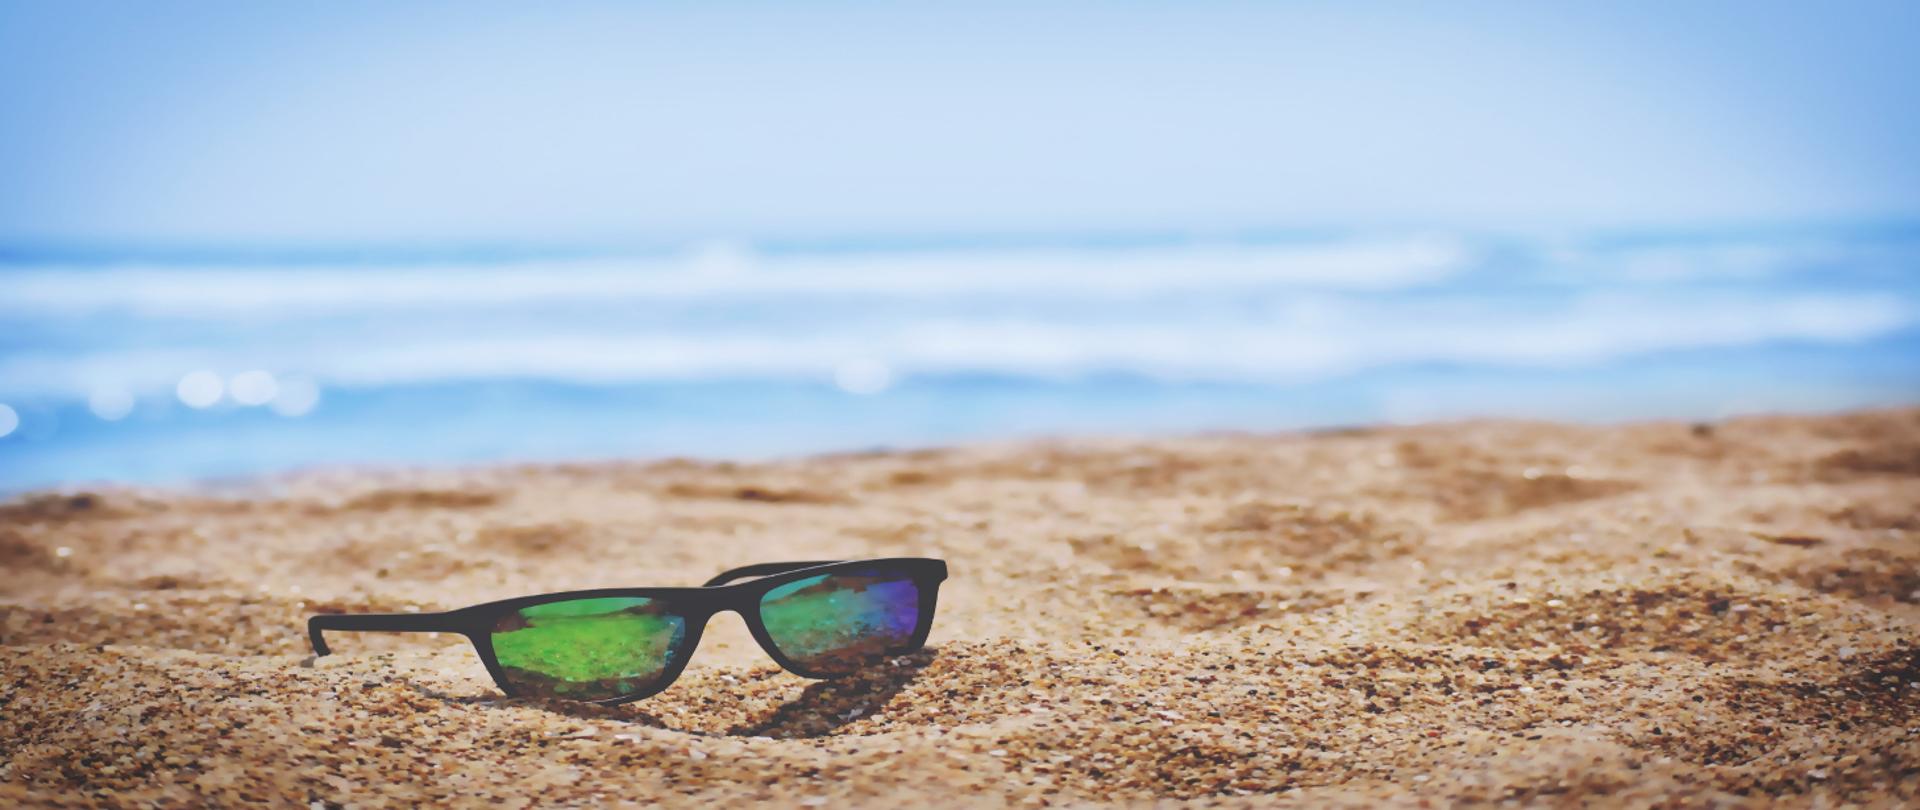 Zdjęcie przedstawiające plażę, na piasku leżą okulary przeciwsłoneczne, a w oddali widać morze.